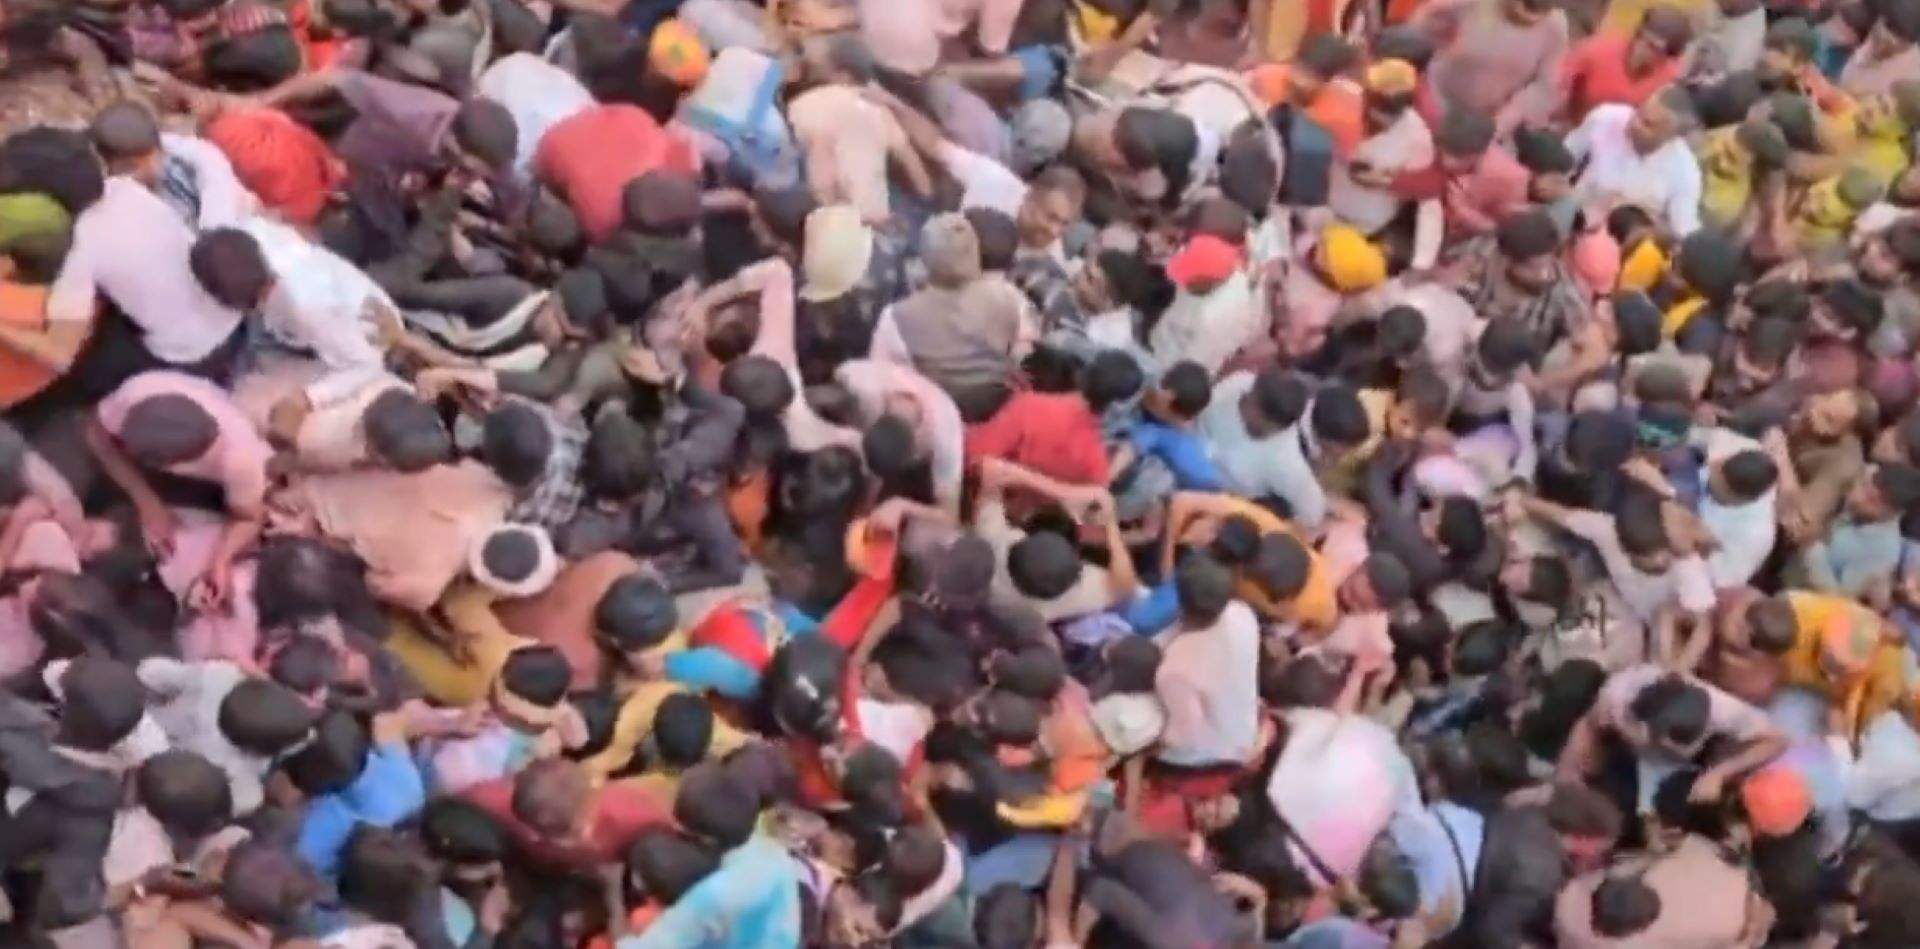 Una estampida posa fi a la vida d'almenys 116 persones que sortien d'un acte religiós a l'Índia